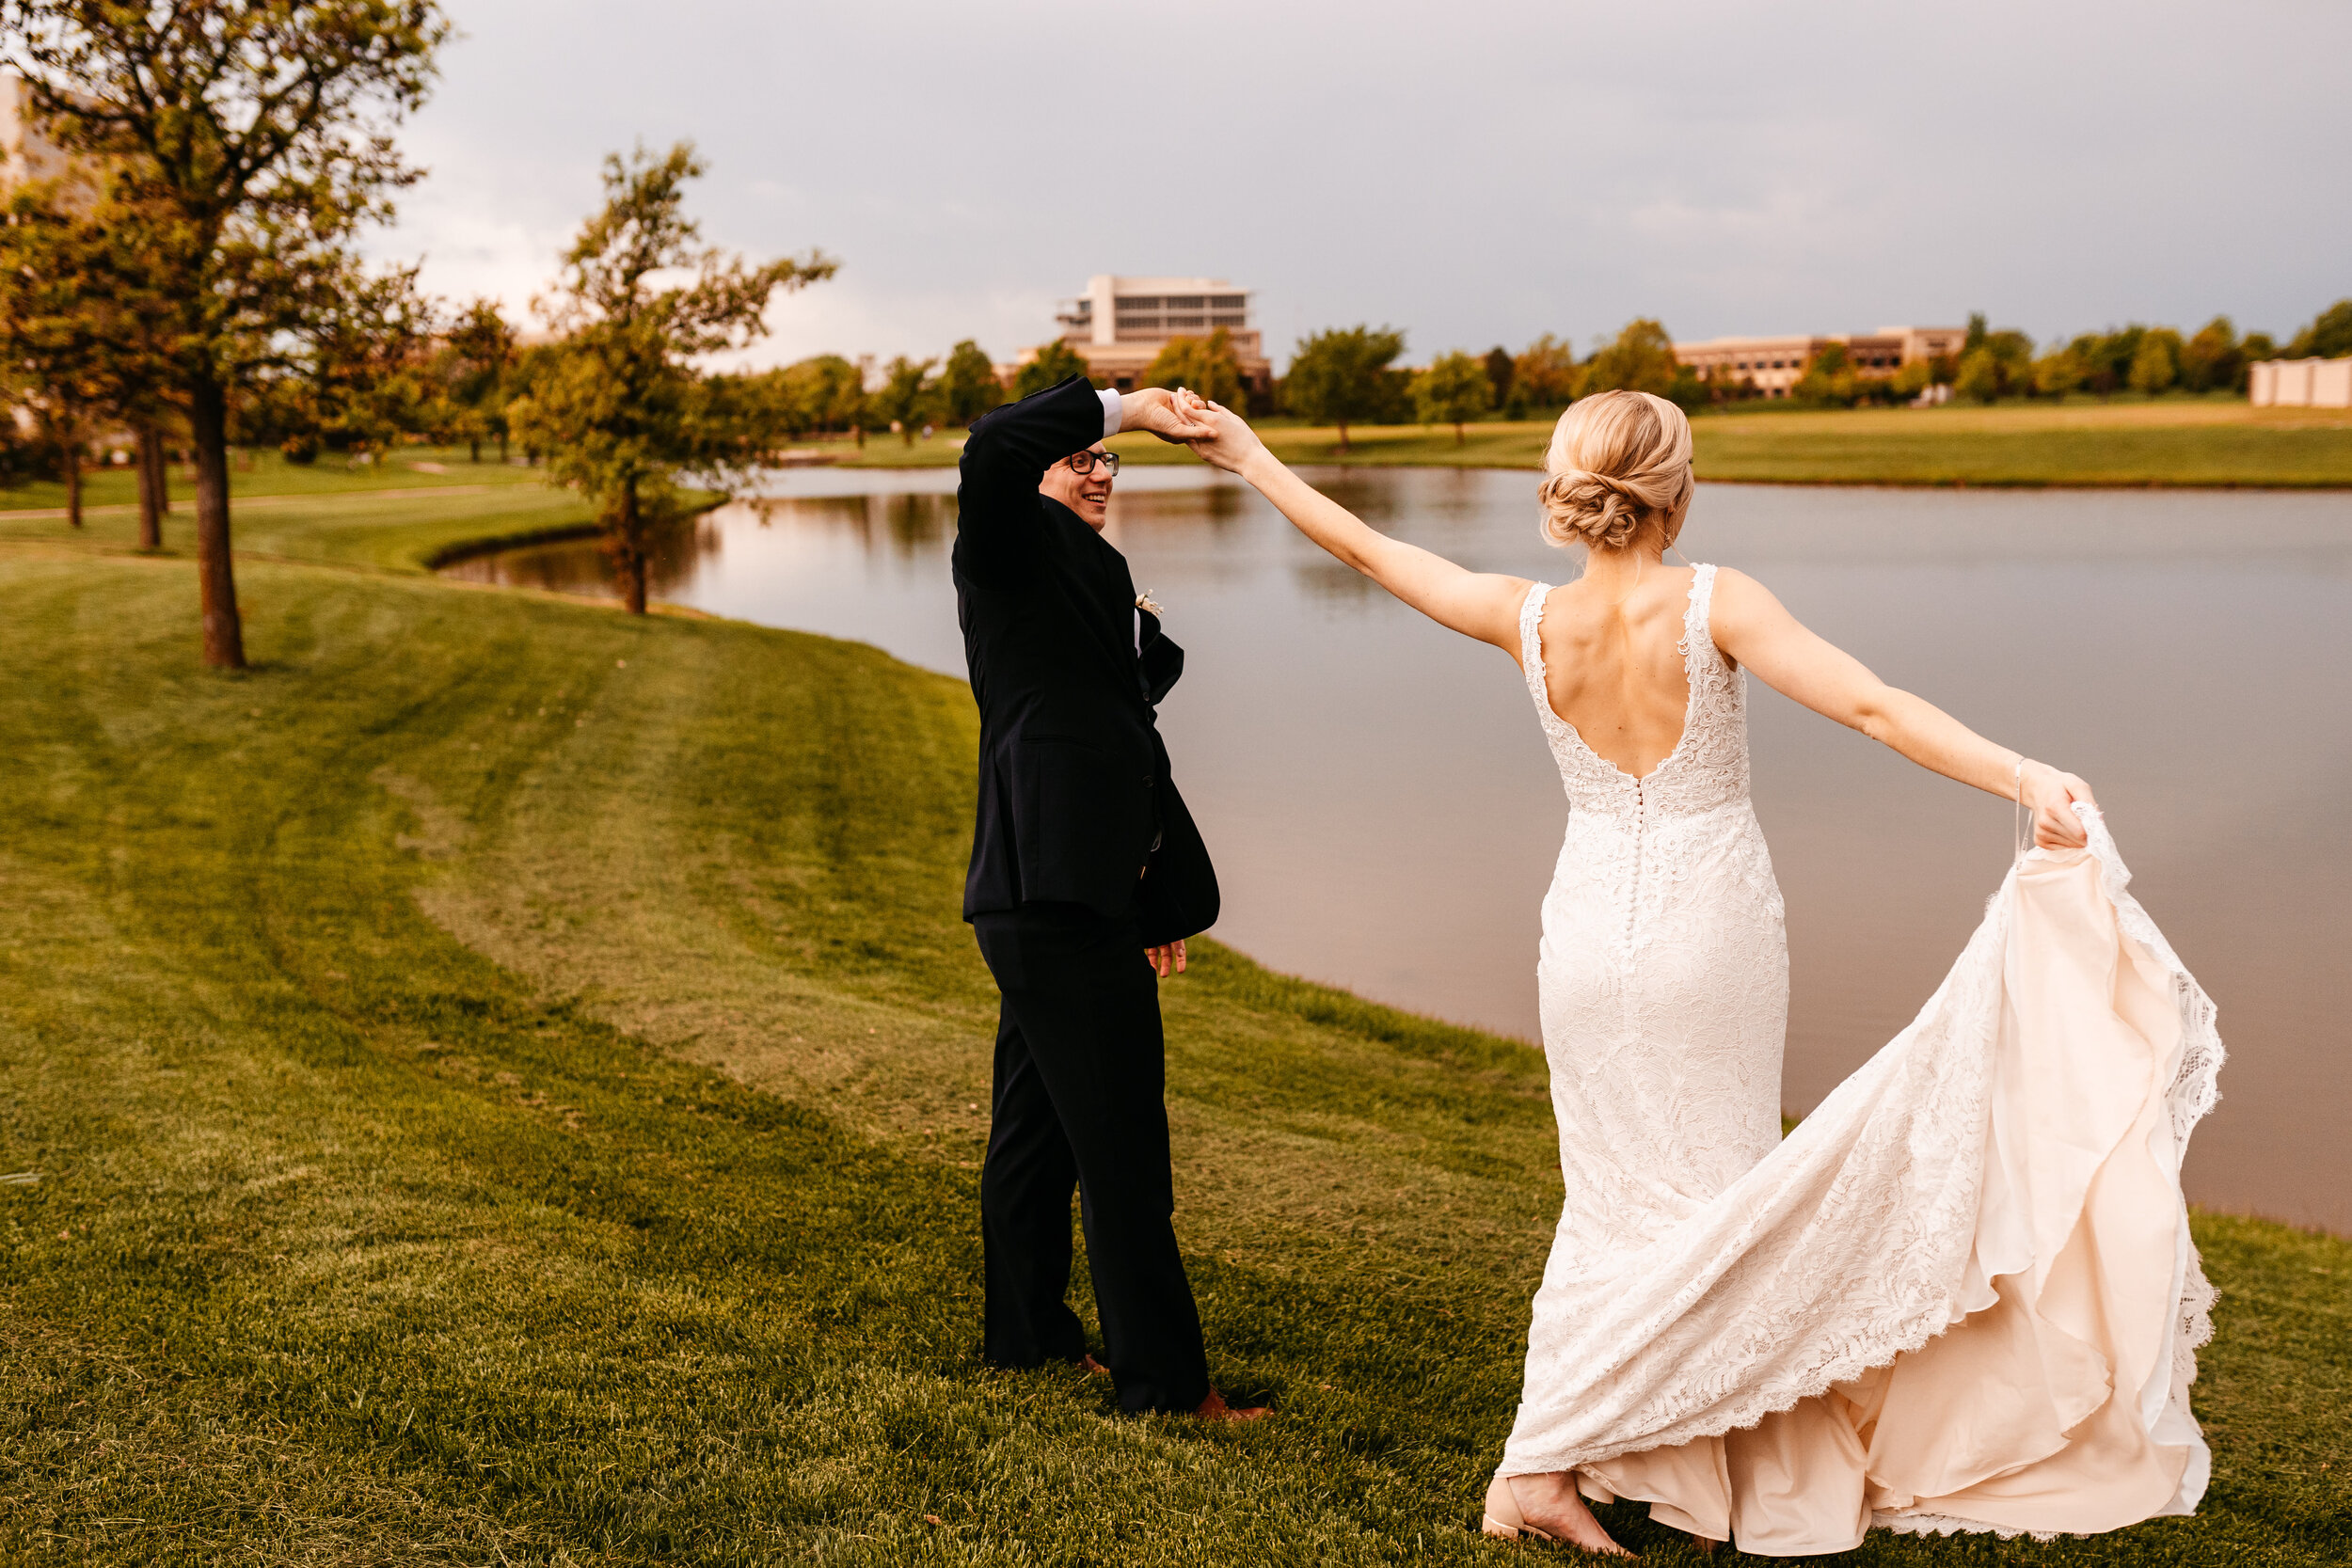 Amber + Nick - Modern Spring Wedding at Noah's Wichita, Kansas128.jpg